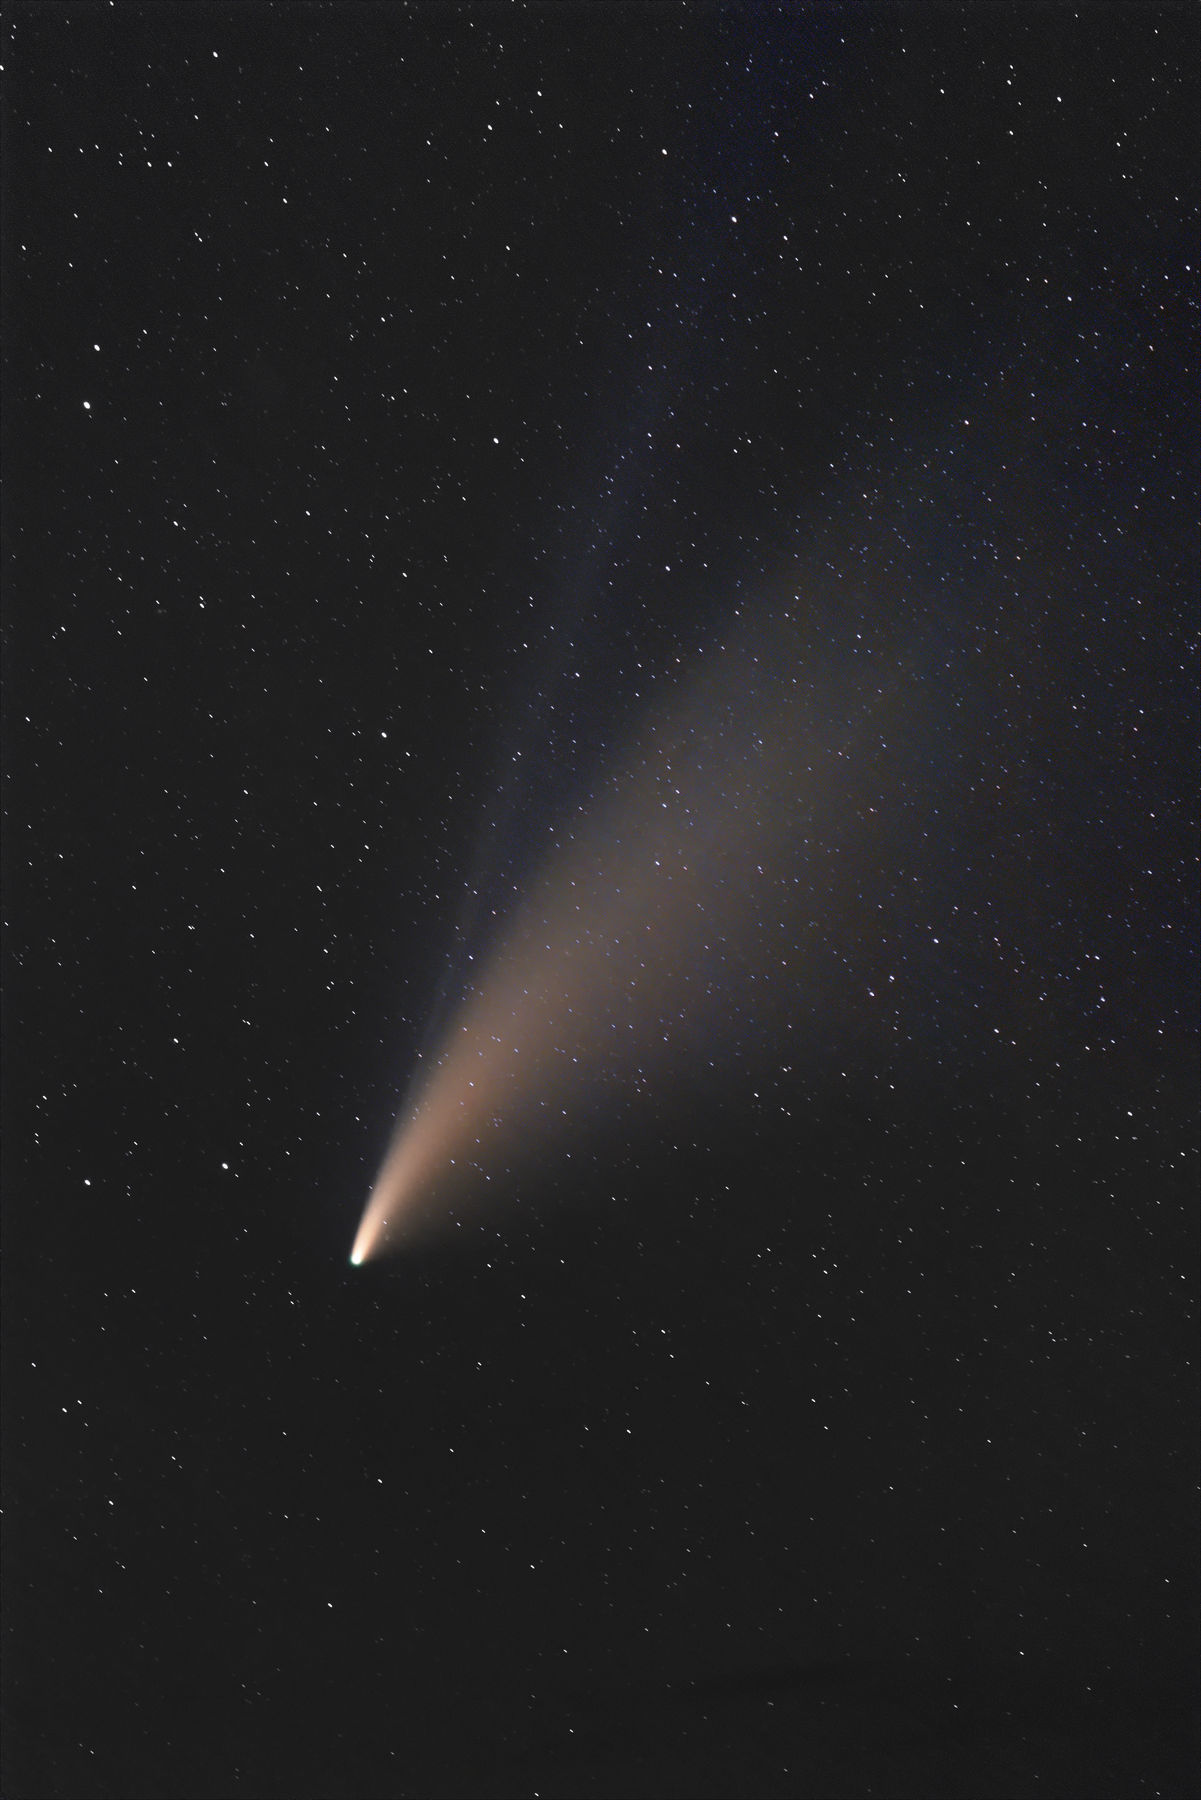 【彗星】C/2020 F3 ネオワイズ彗星